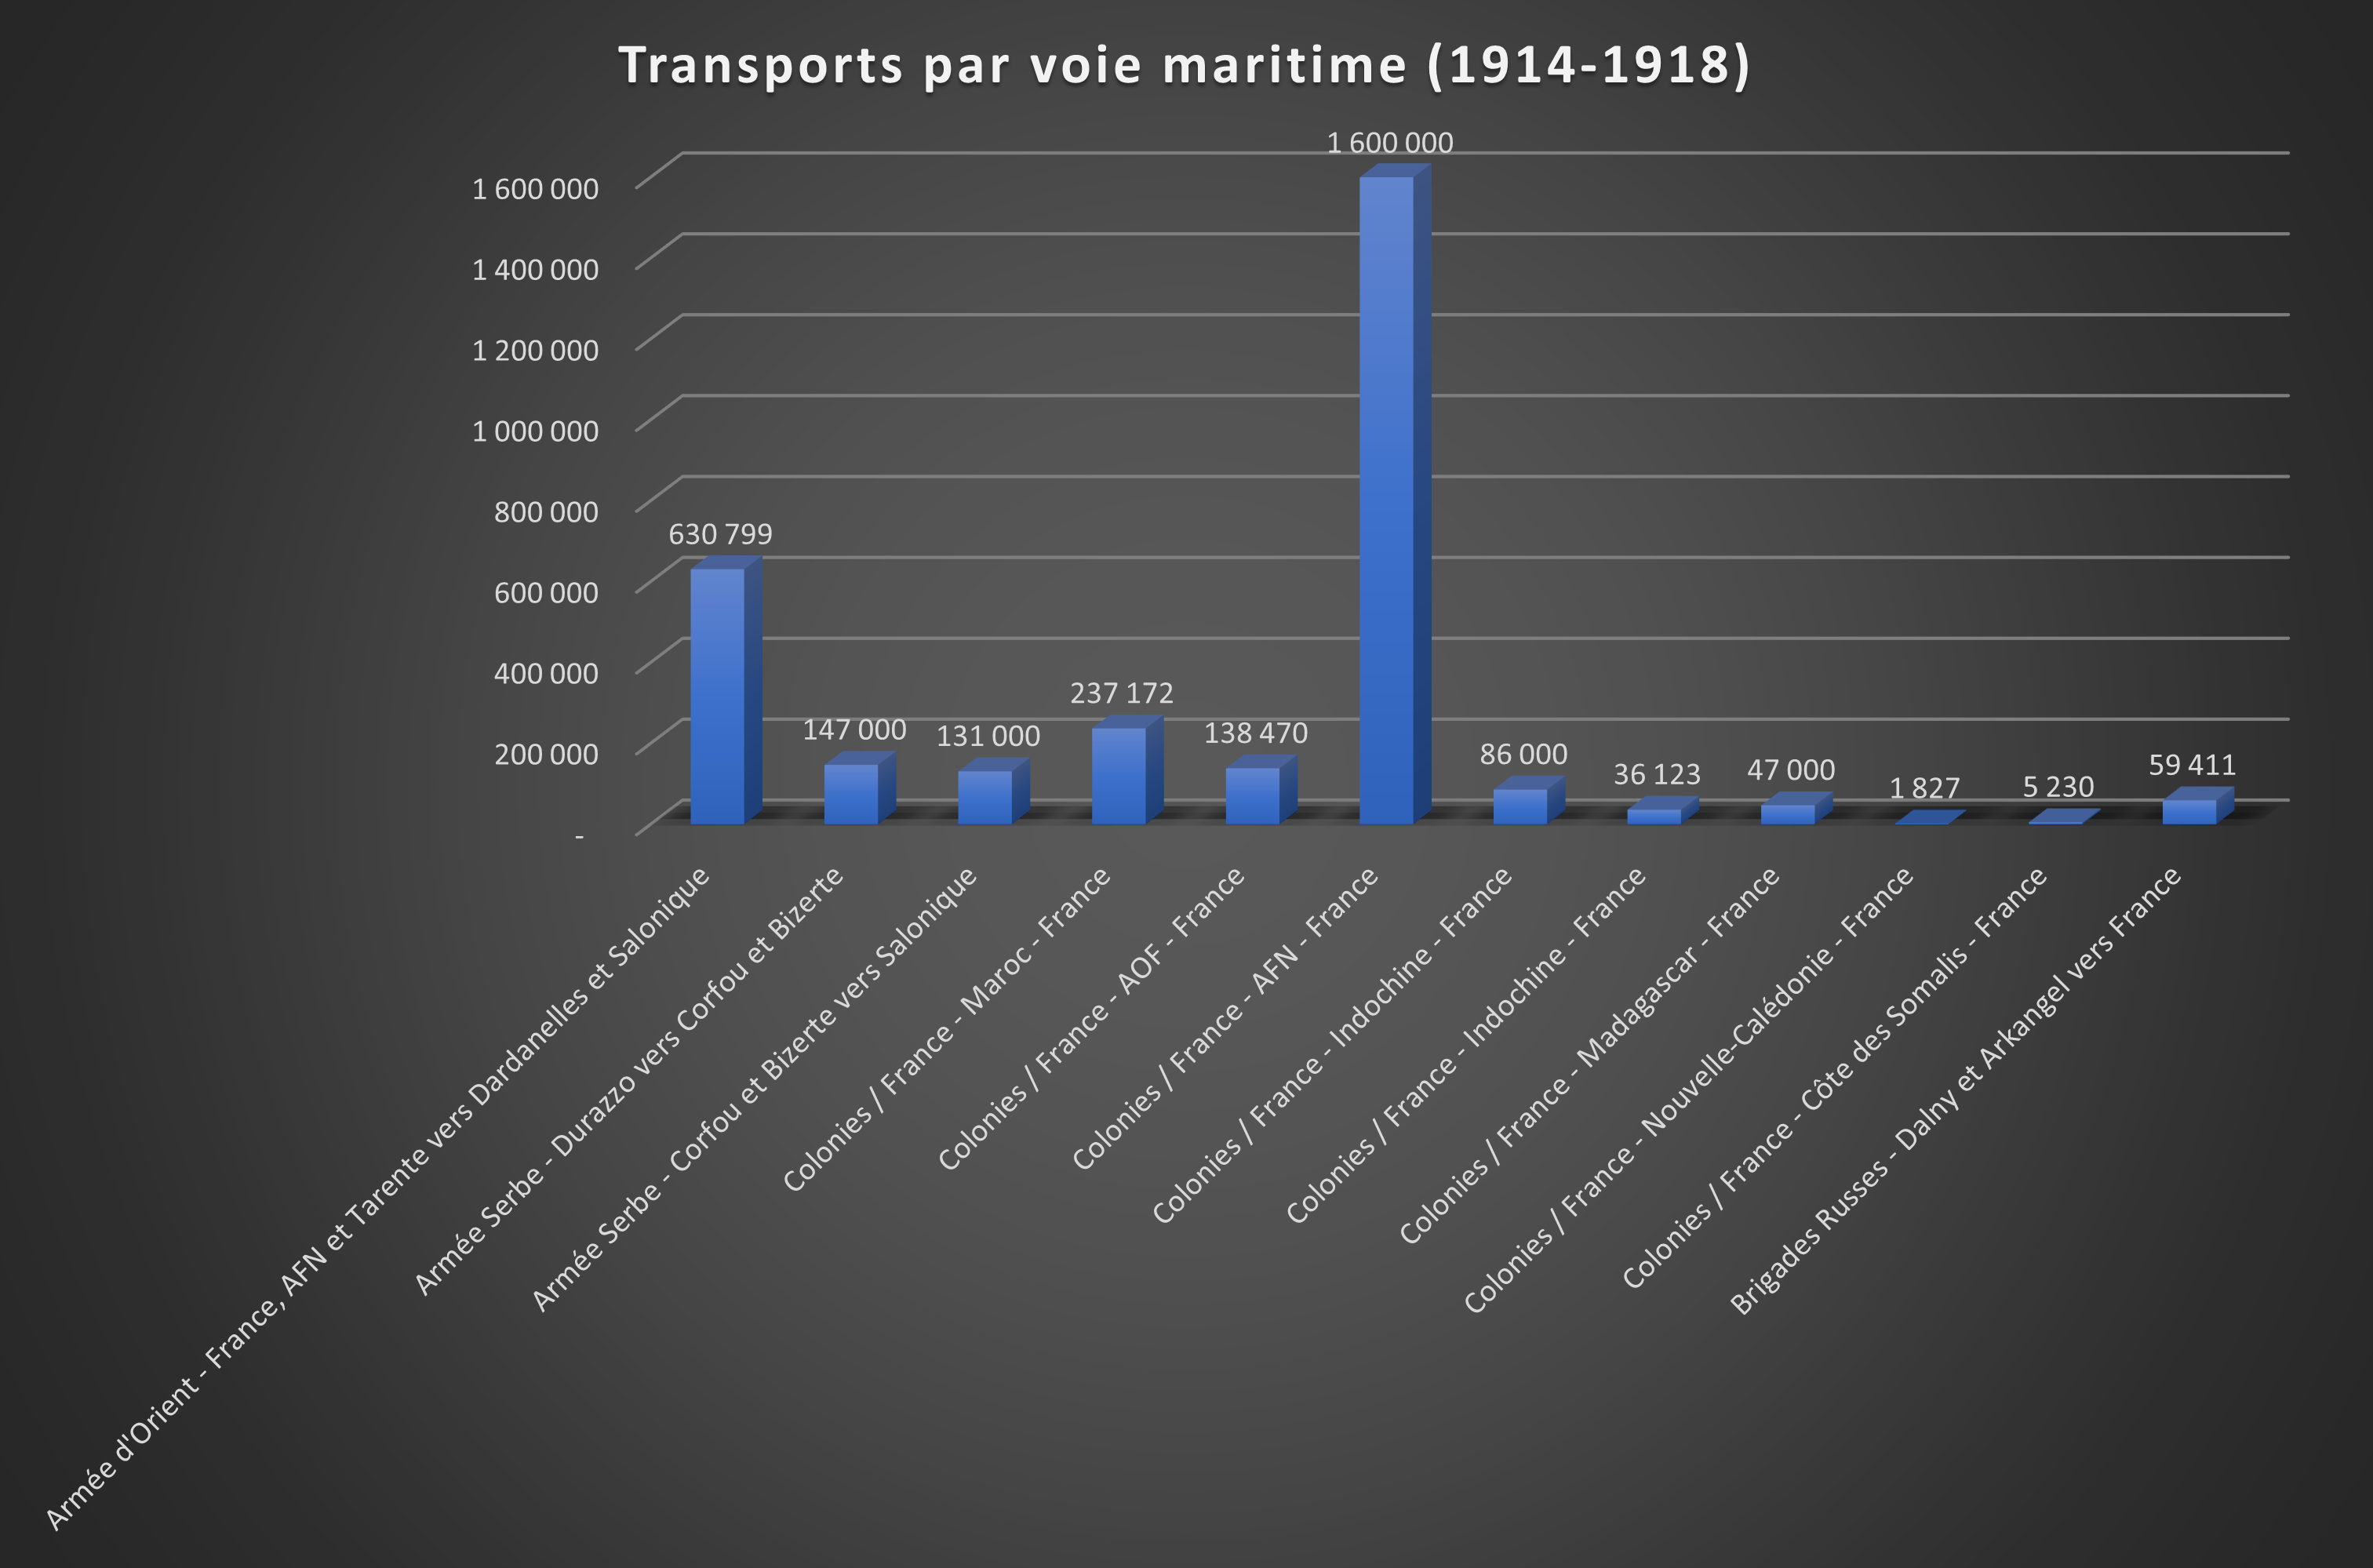 Transports par voie maritime 14-18.png